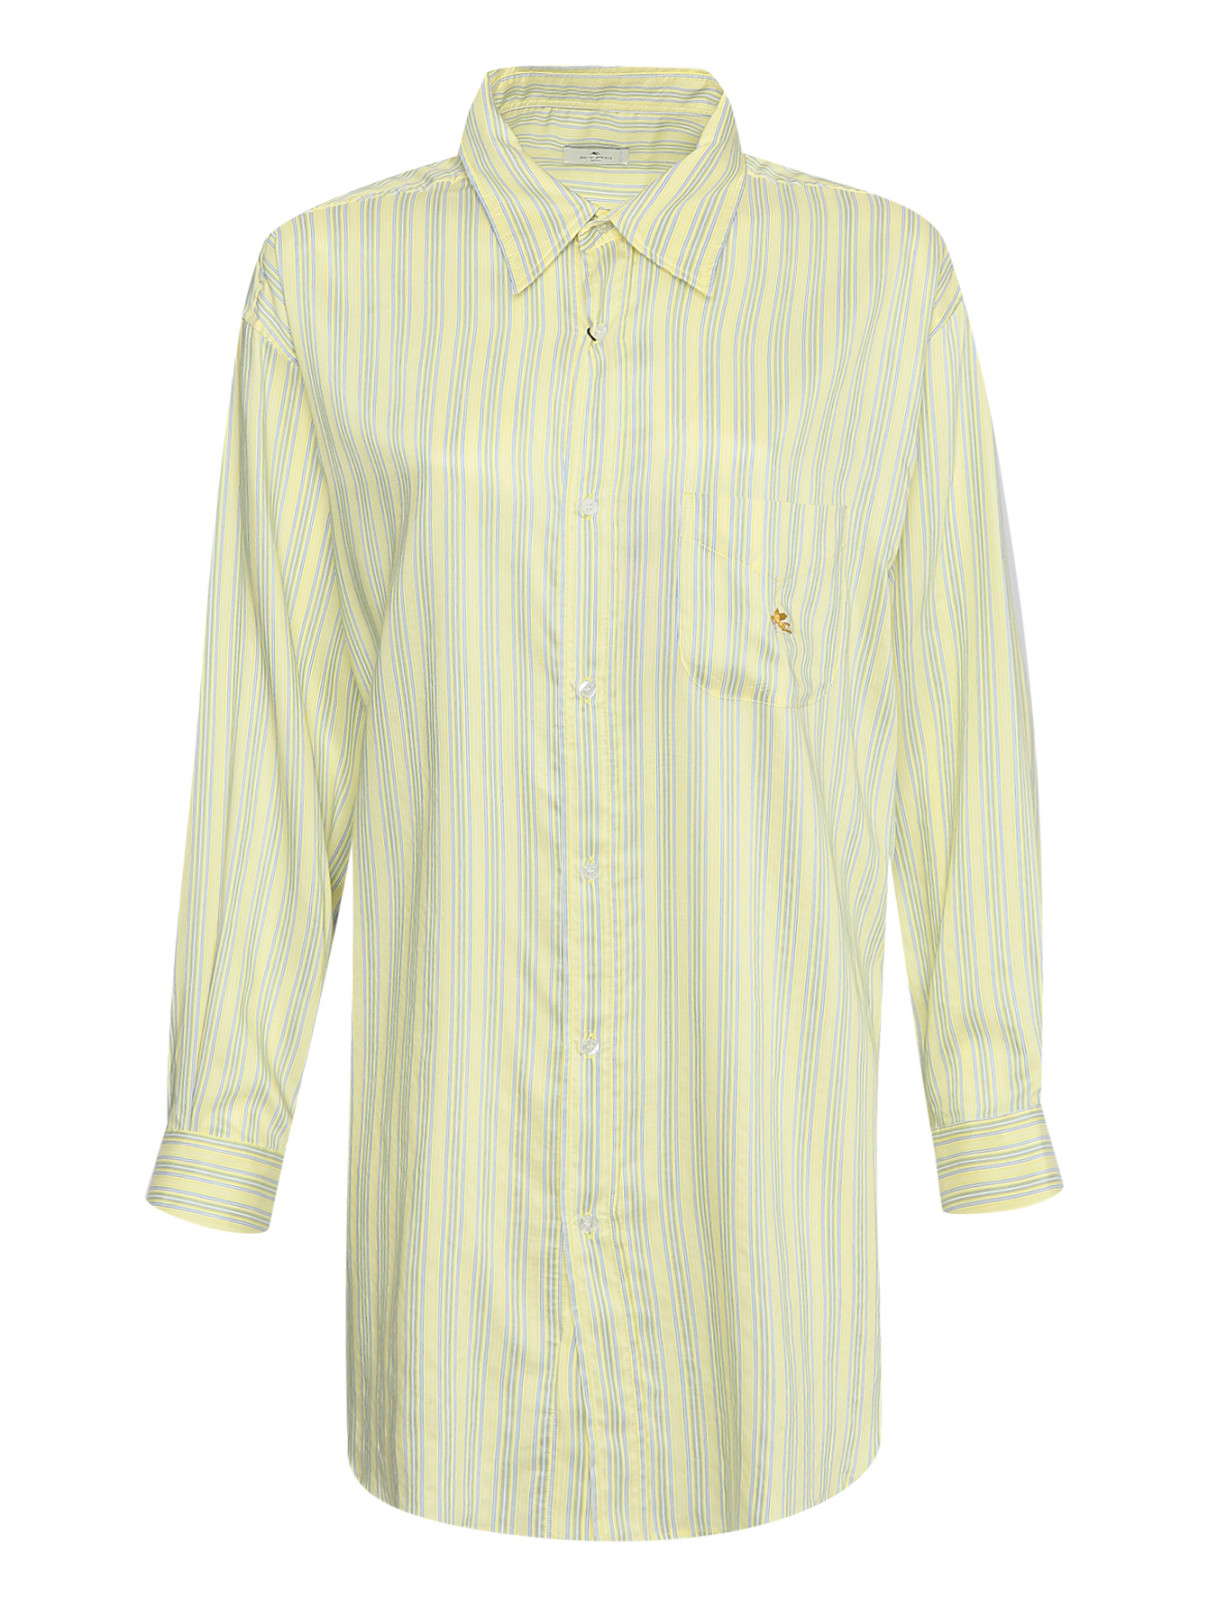 Рубашка с узором полоска Etro  –  Общий вид  – Цвет:  Желтый